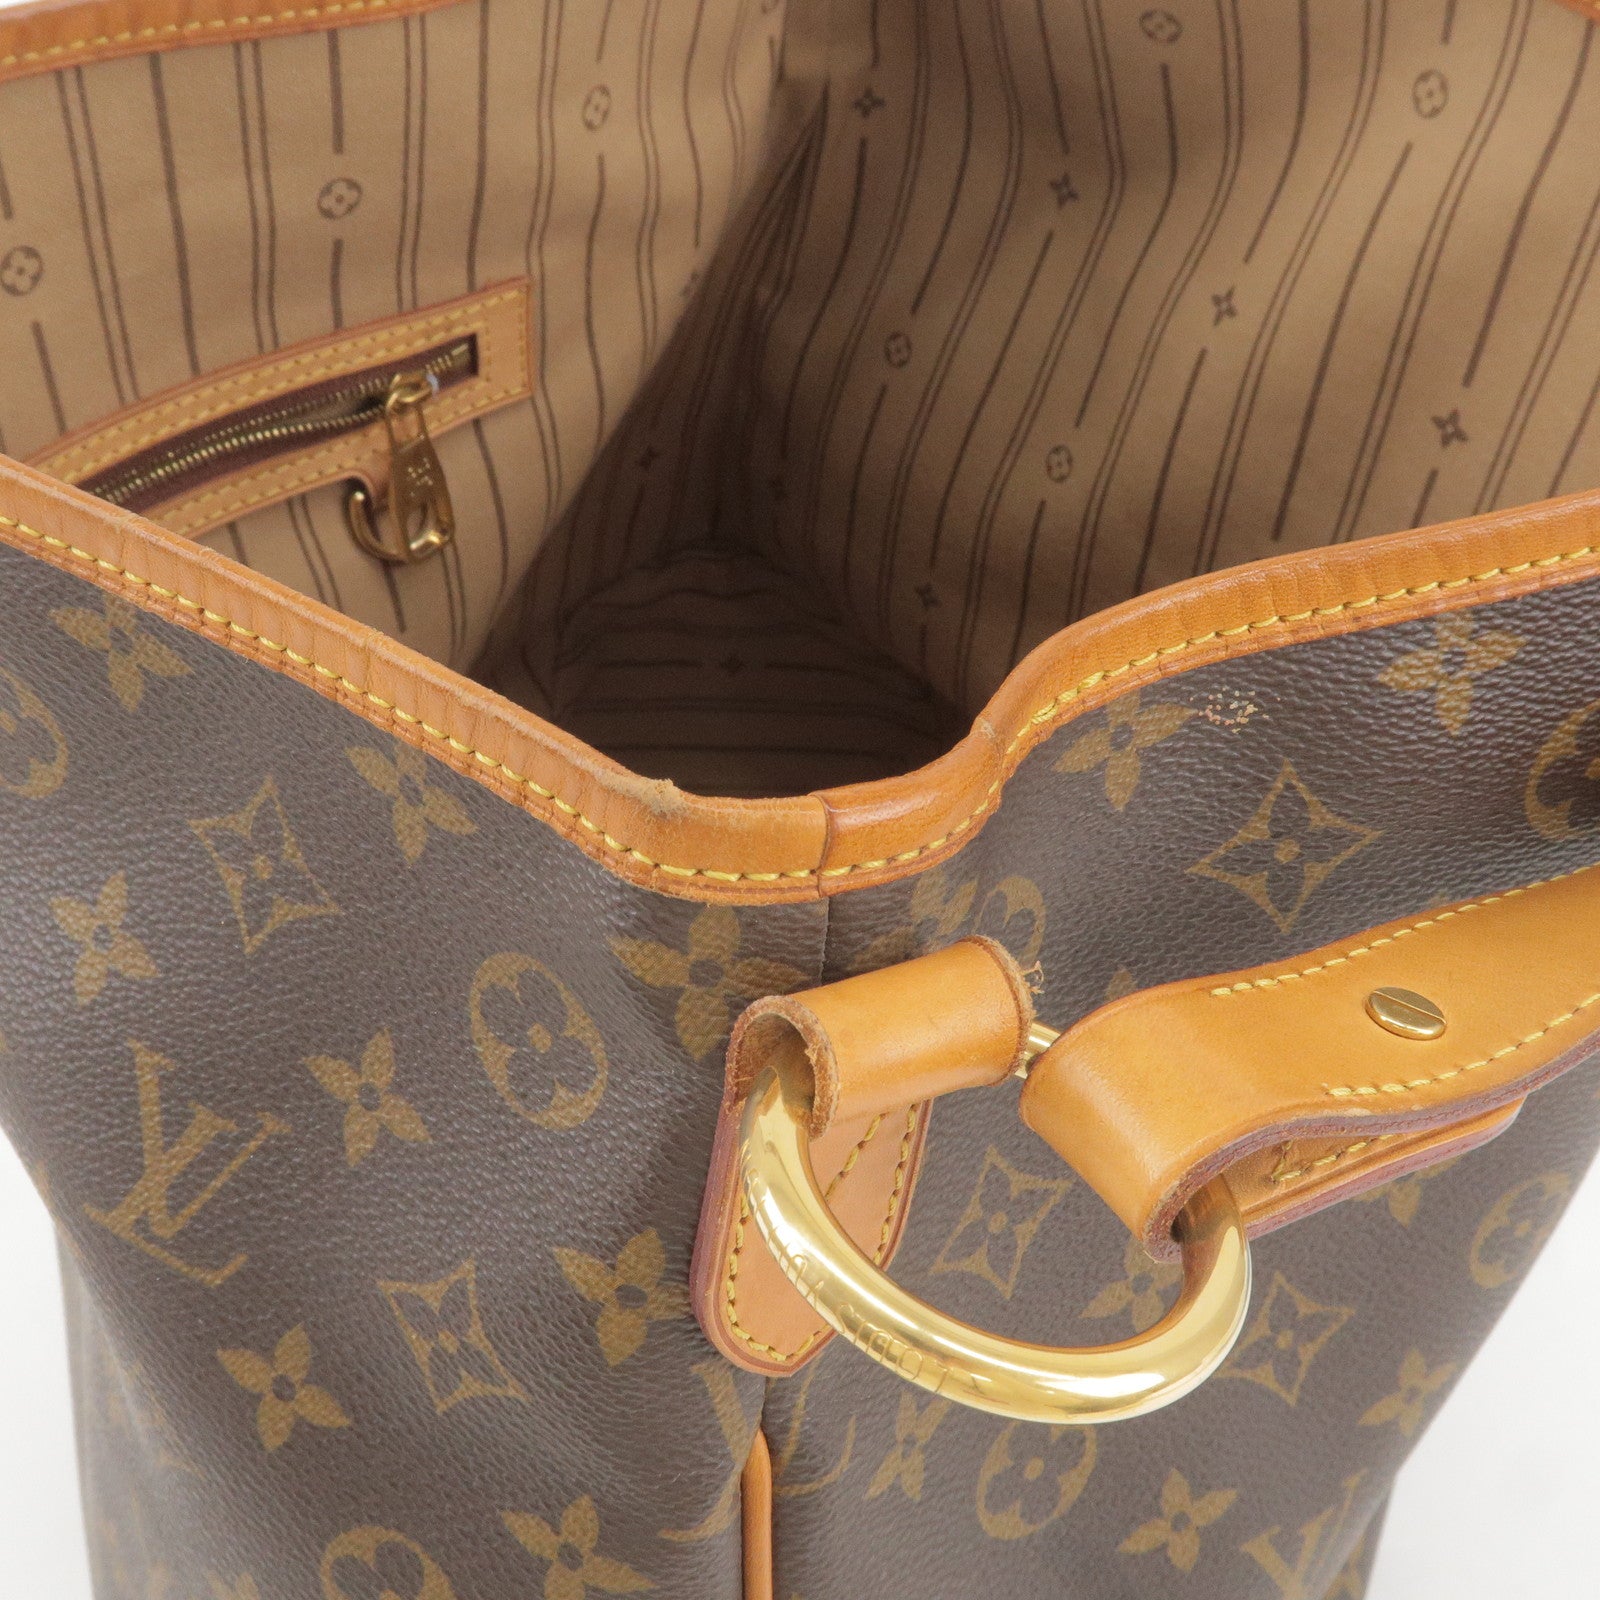 Louis-Vuitton-Monogram-Delightful-MM-Shoulder-Bag-M40353 – dct